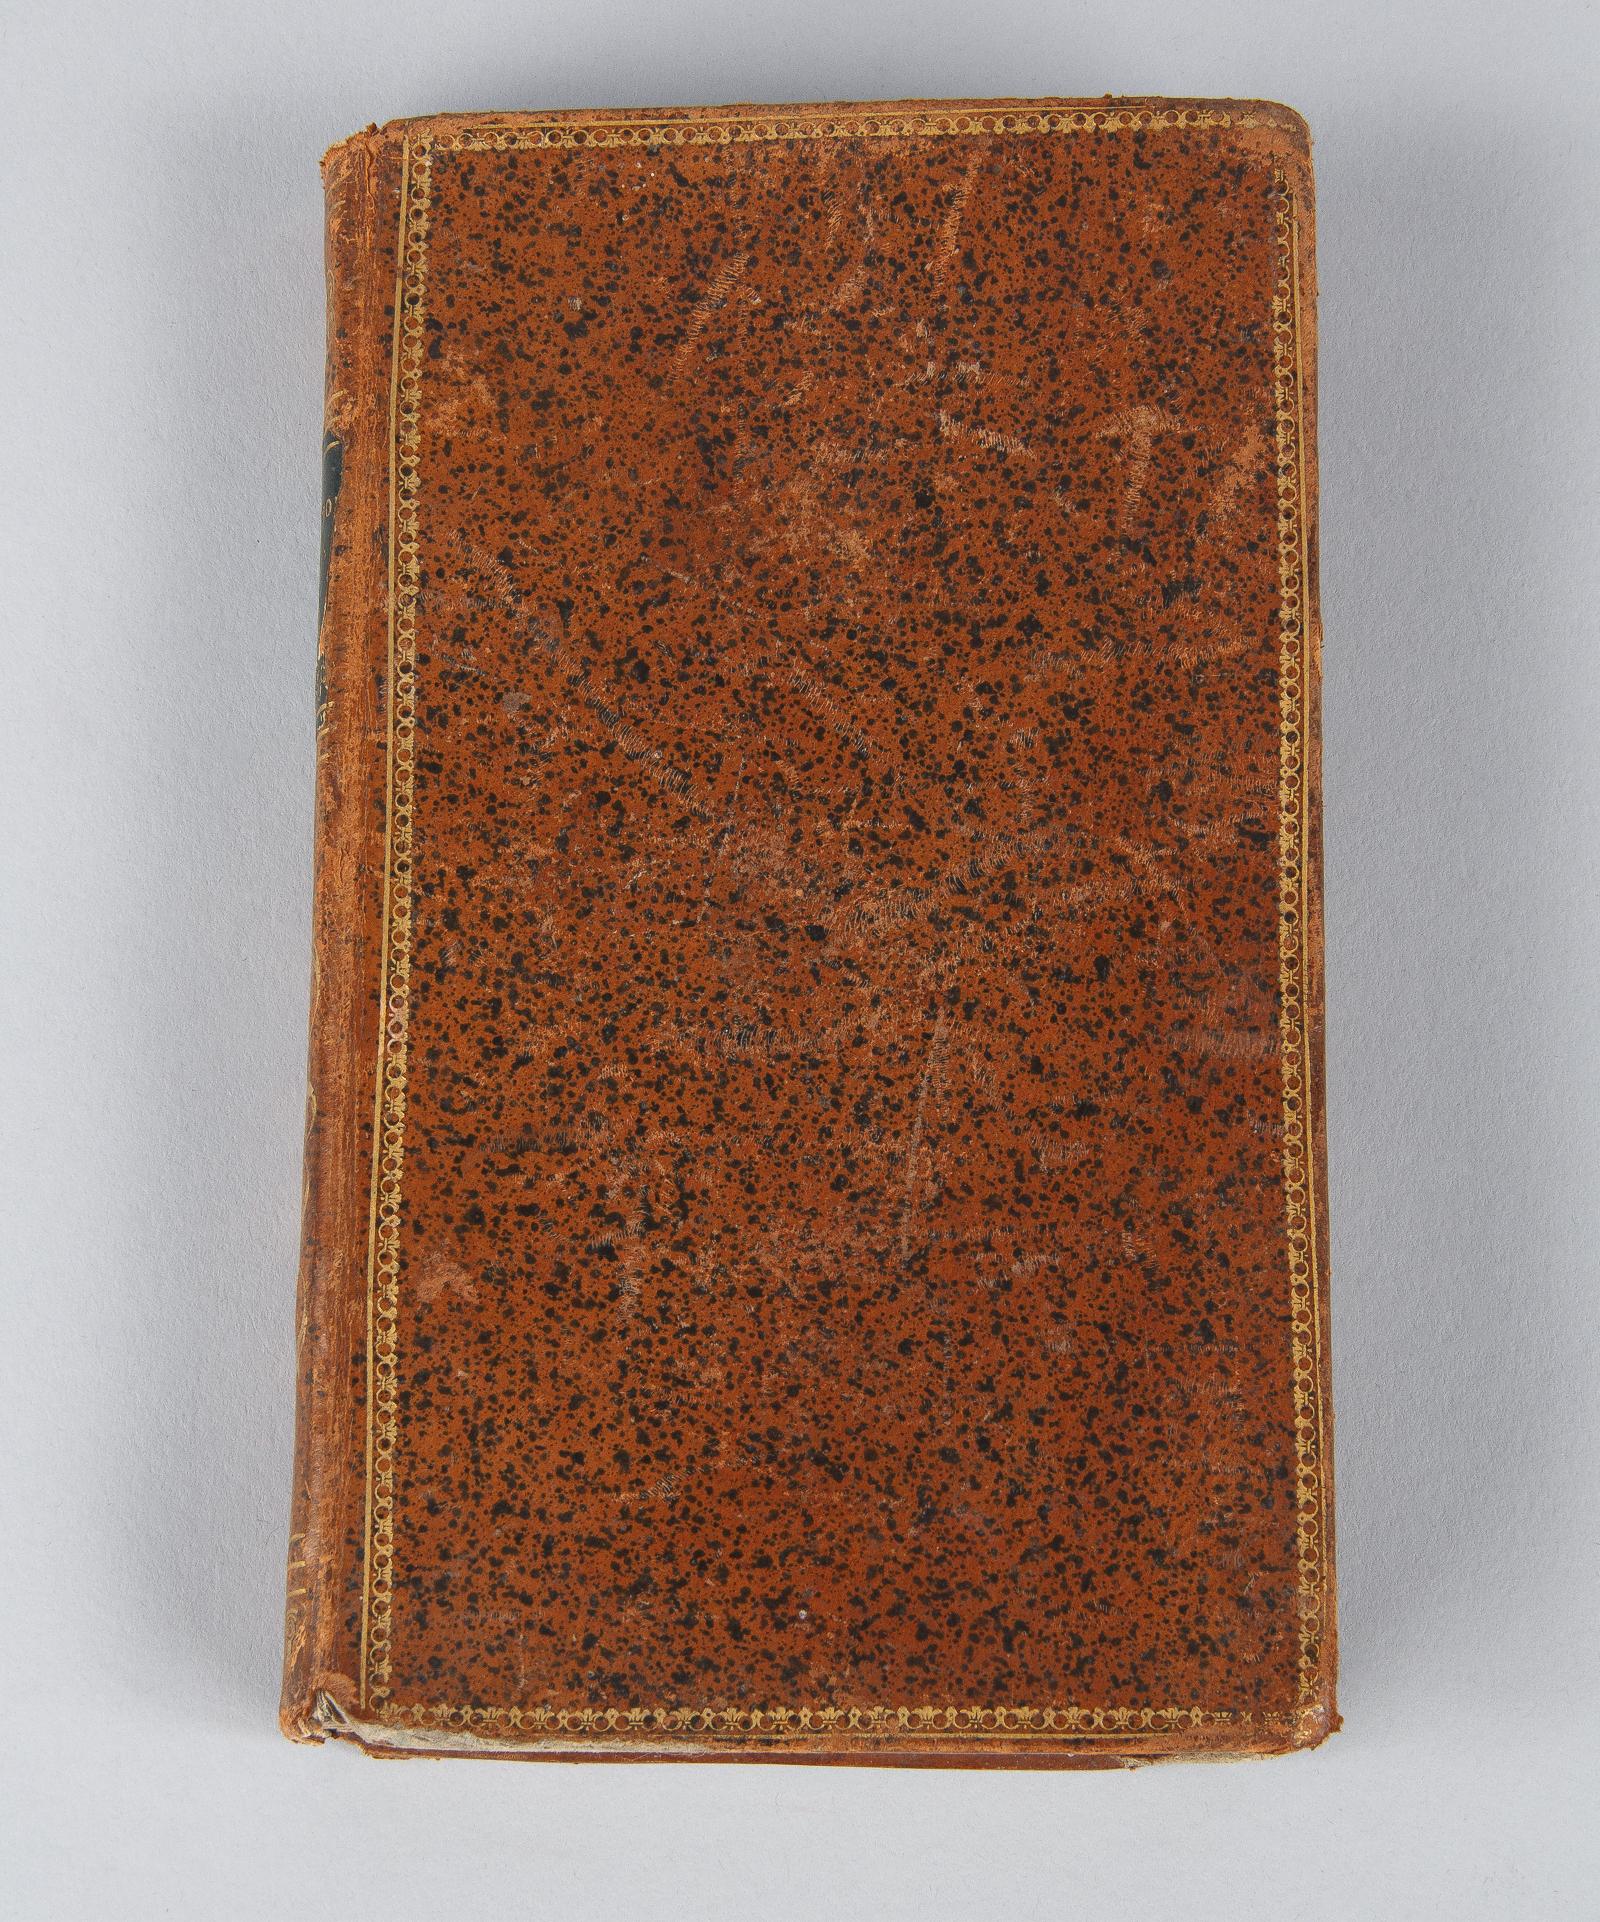 Leather French Religious Book, Meditations et Sentiments sur La Sainte Communion, 1847